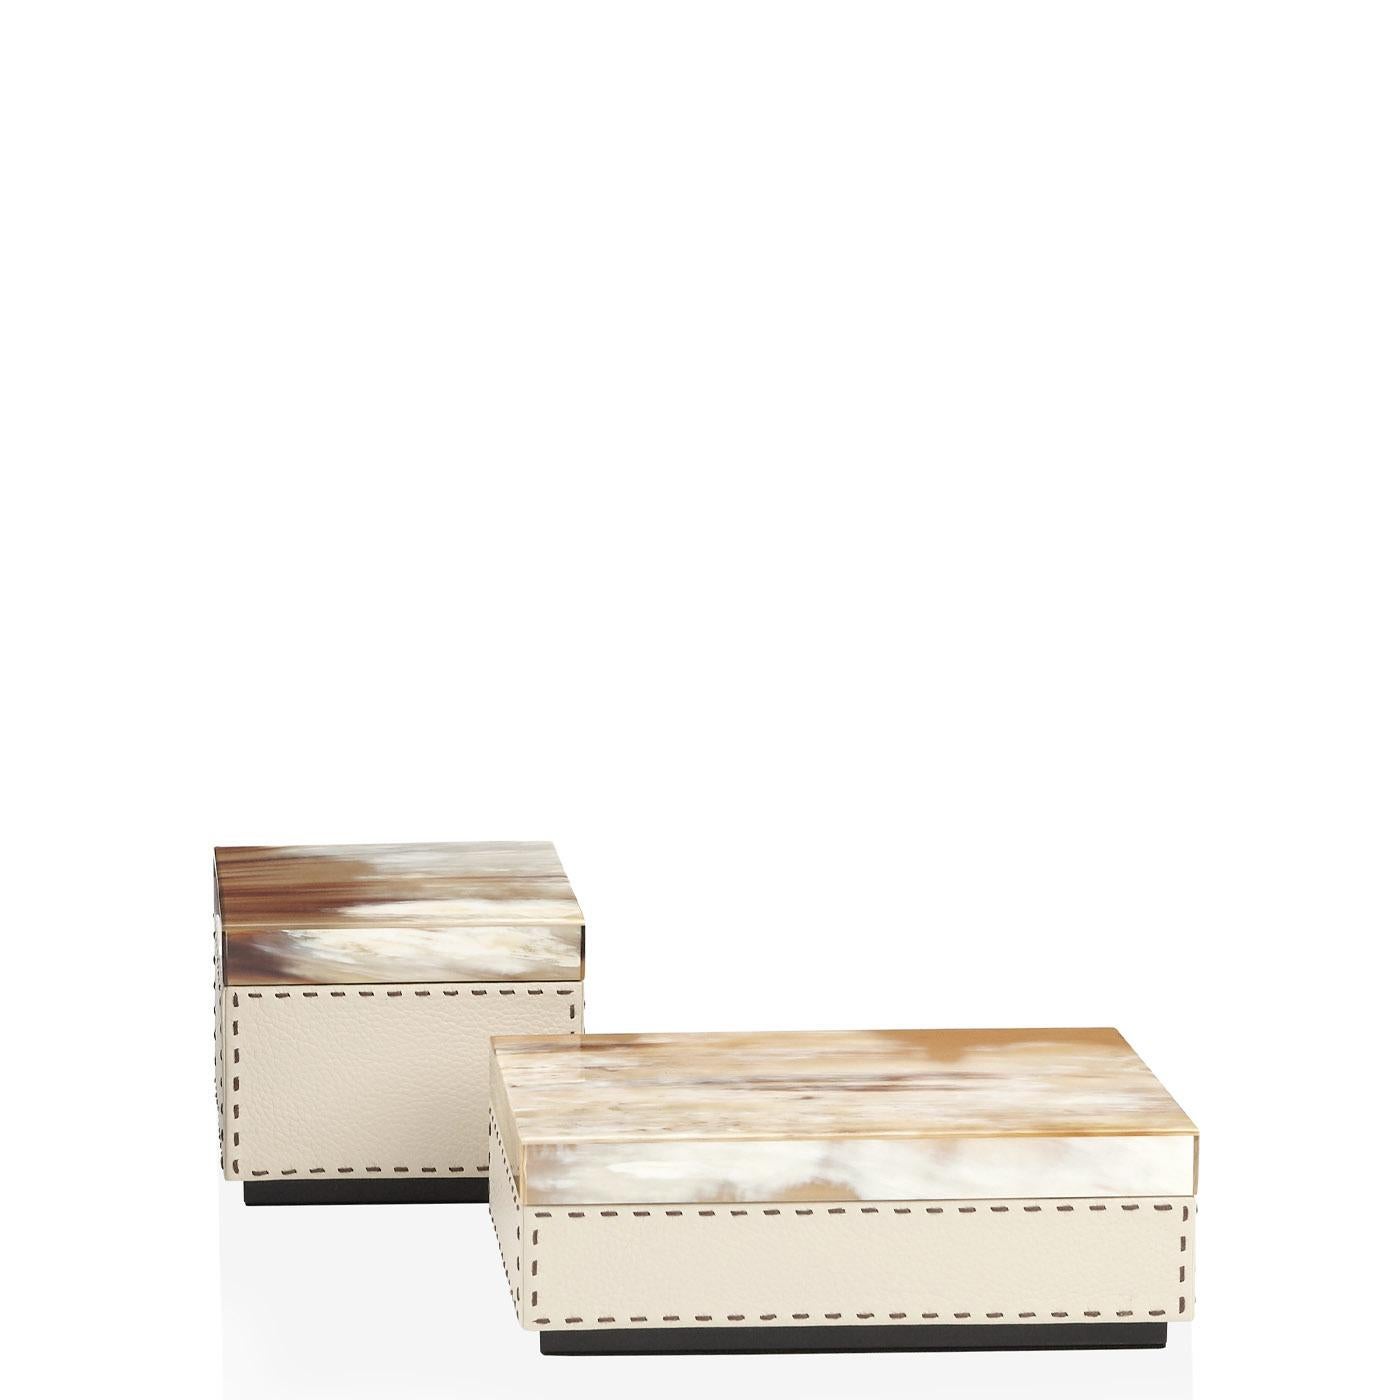 Contemporary Ottavia Box in Pebbled Leather with Lid in Corno Italiano, Mod. 4466 For Sale